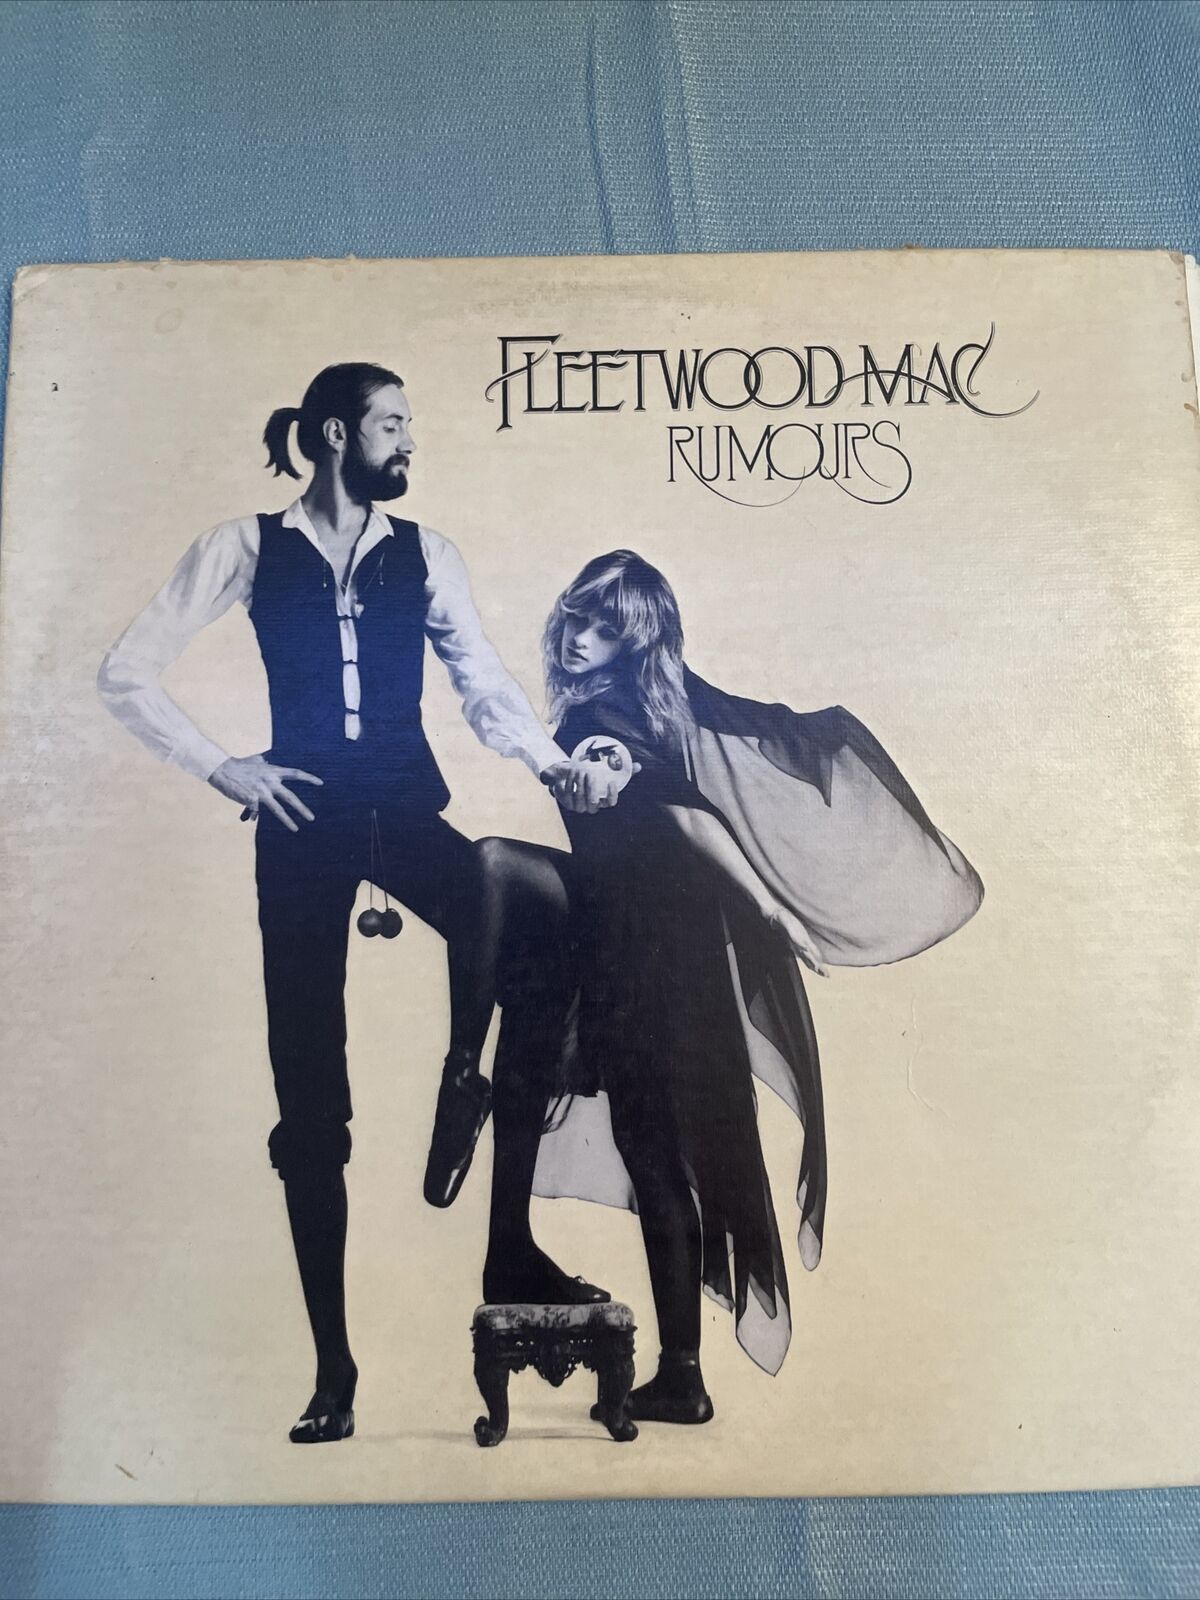 Rumors Fleetwoodmac (clear Vinyl) Factory Sealed 